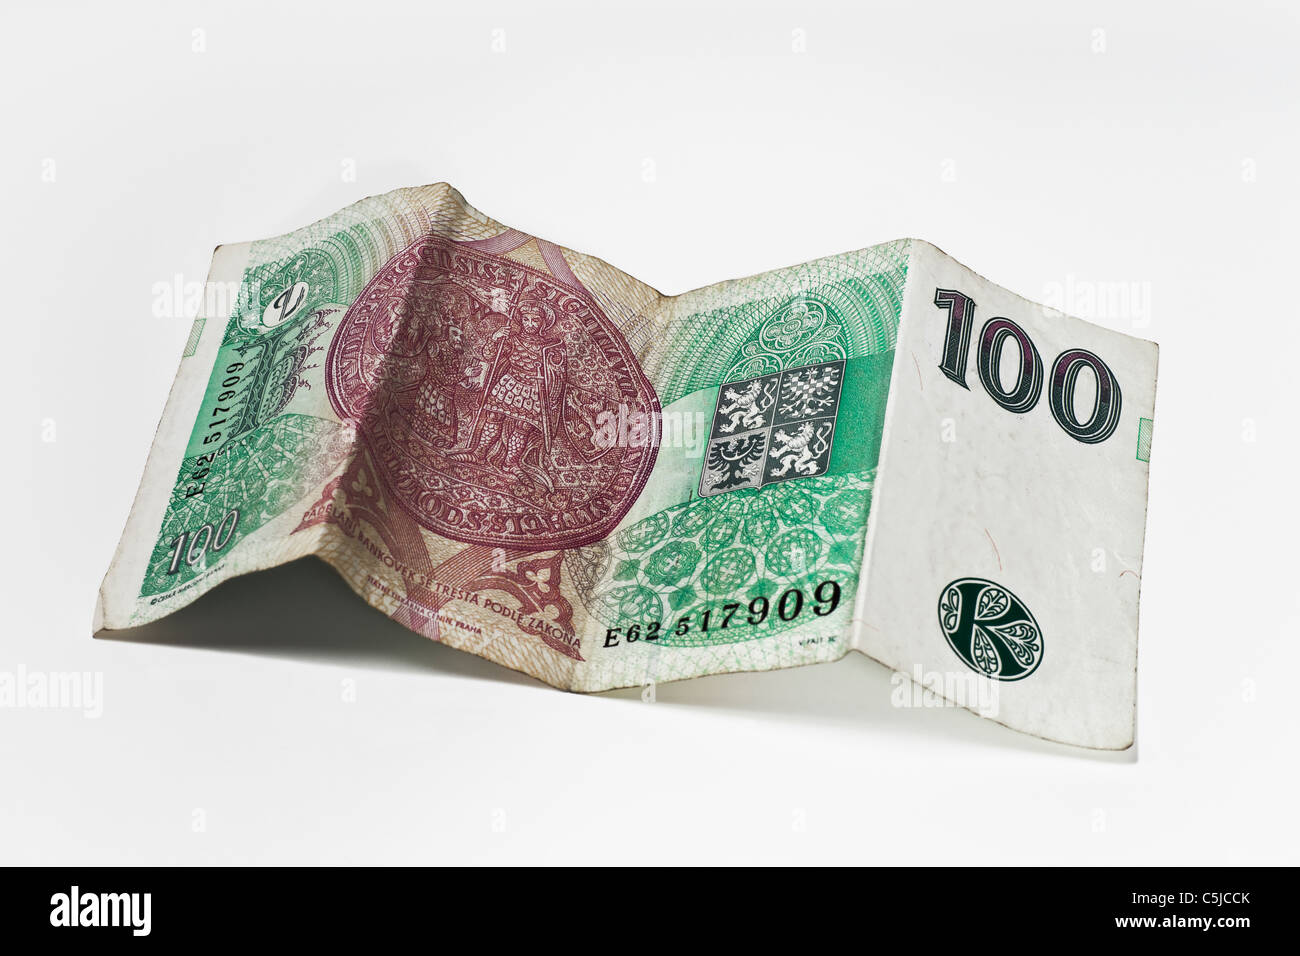 Rückseite einer tschechischen 100 Kronen Banknote | back side of a czech 100 koruna Banknote Stock Photo